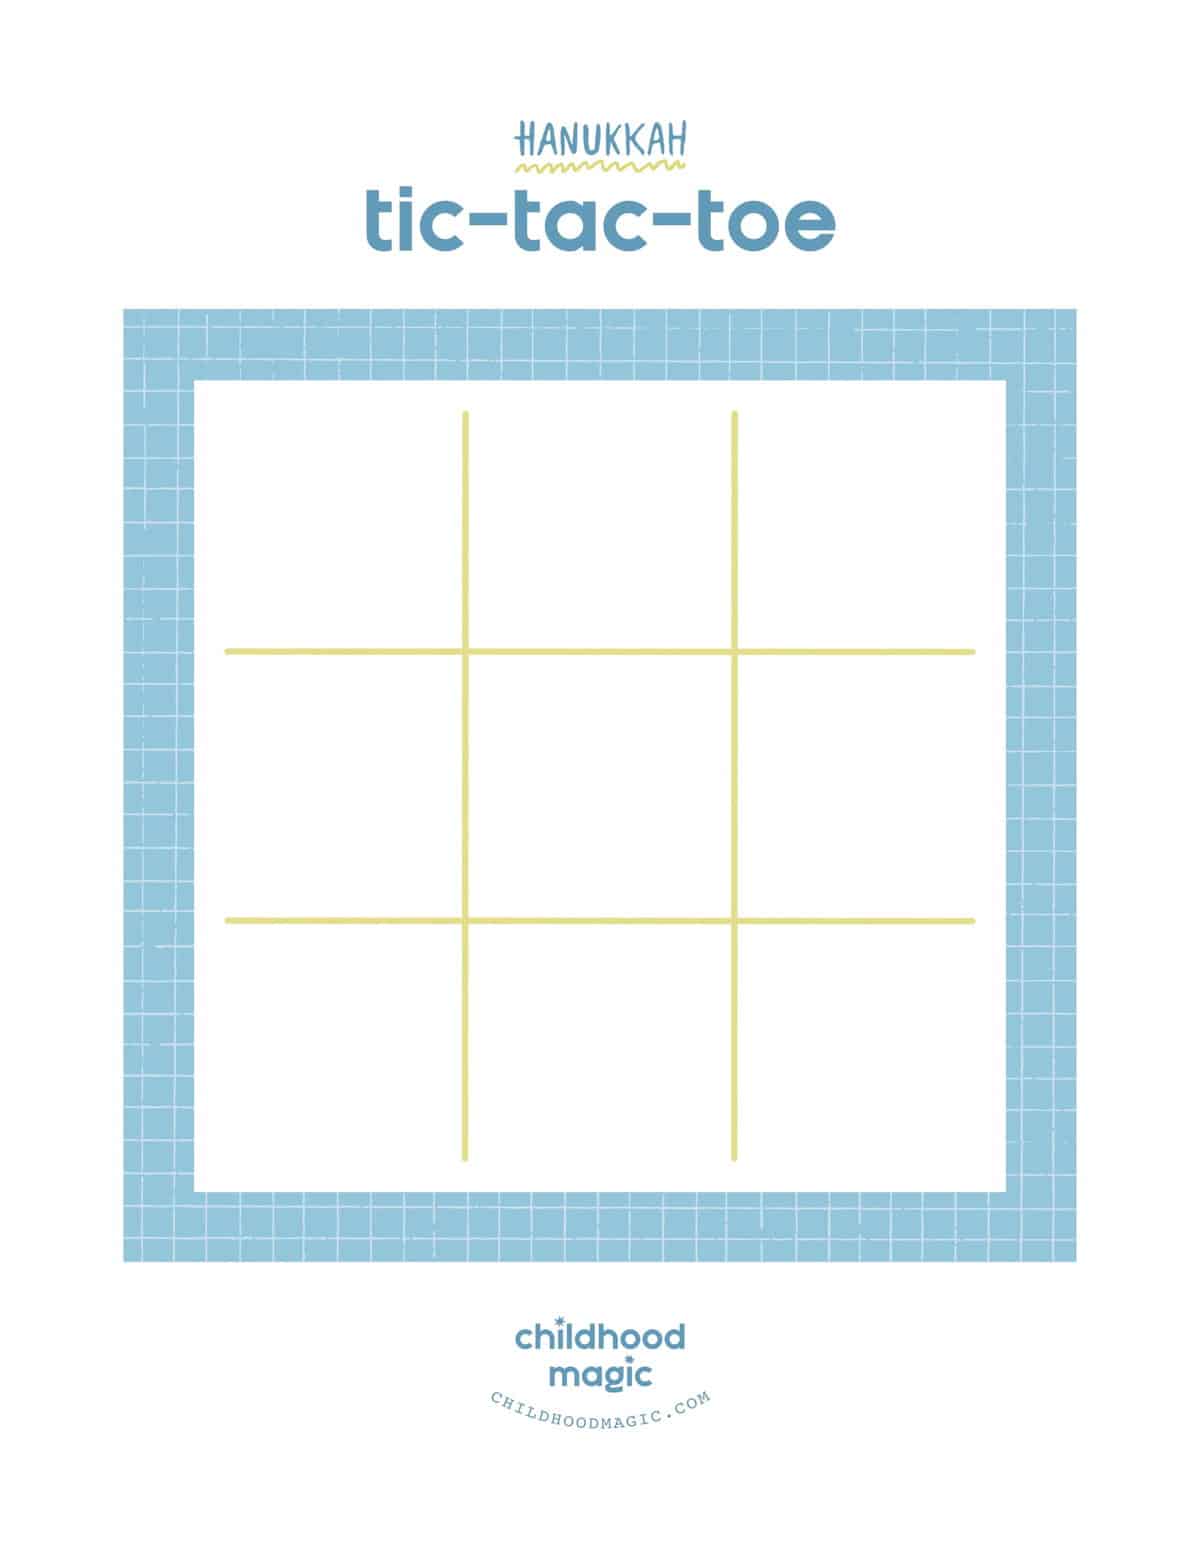 Printable Hanukkah tic tac toe board in full color. 